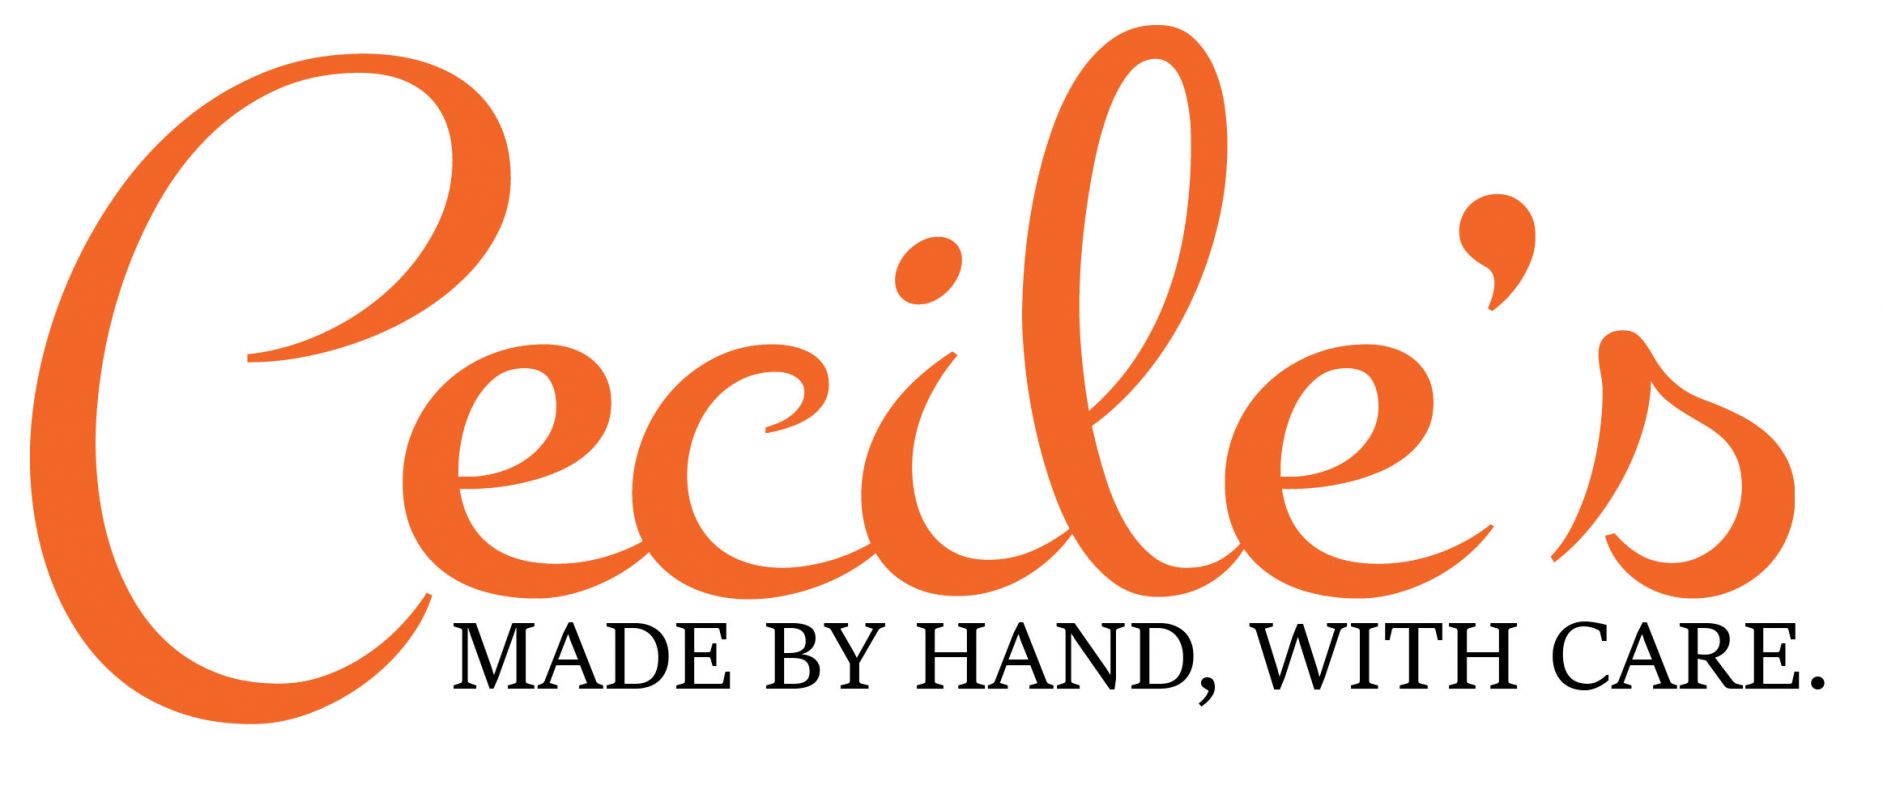 Ceciles Logo